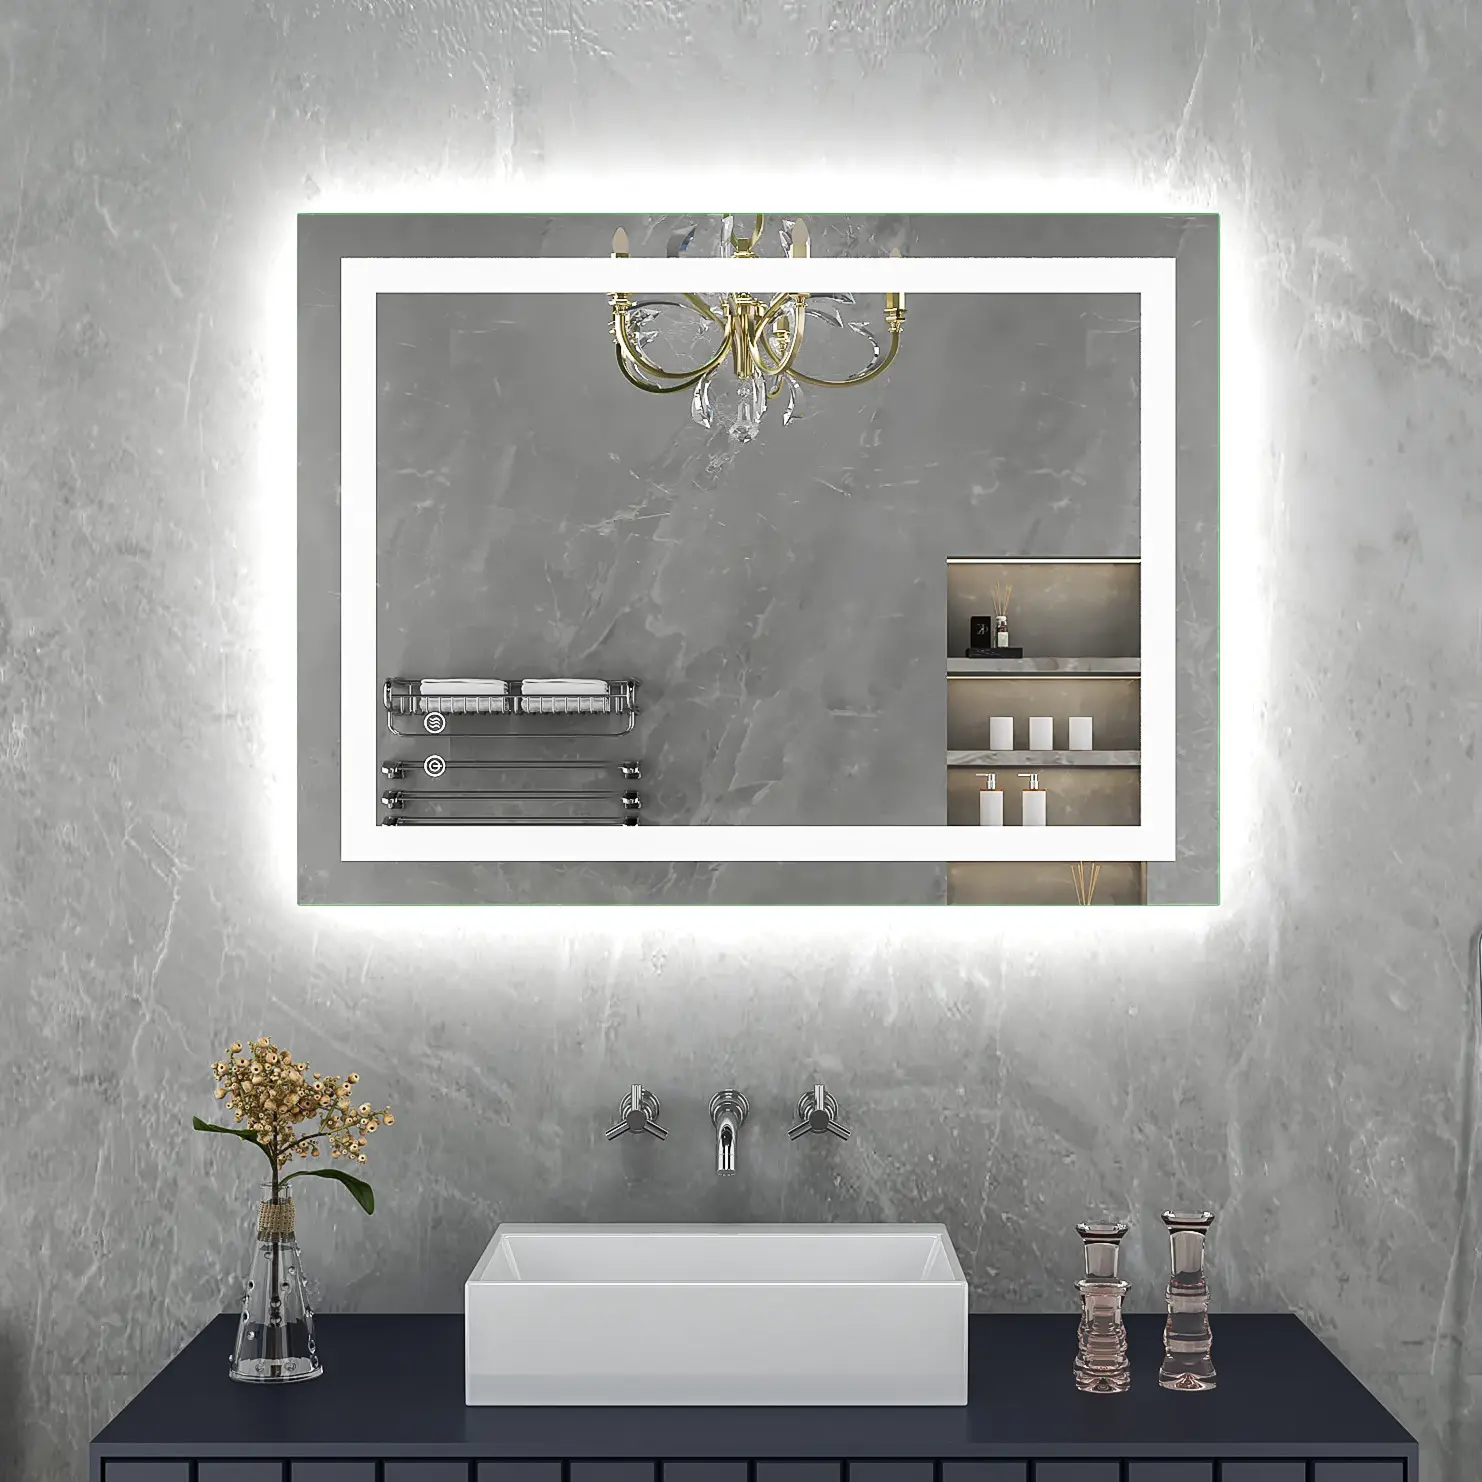 الفاخرة غسل غرفة مستطيل كبير تضيء مرآة الحائط مانع الضباب الذكية مرآة حمام